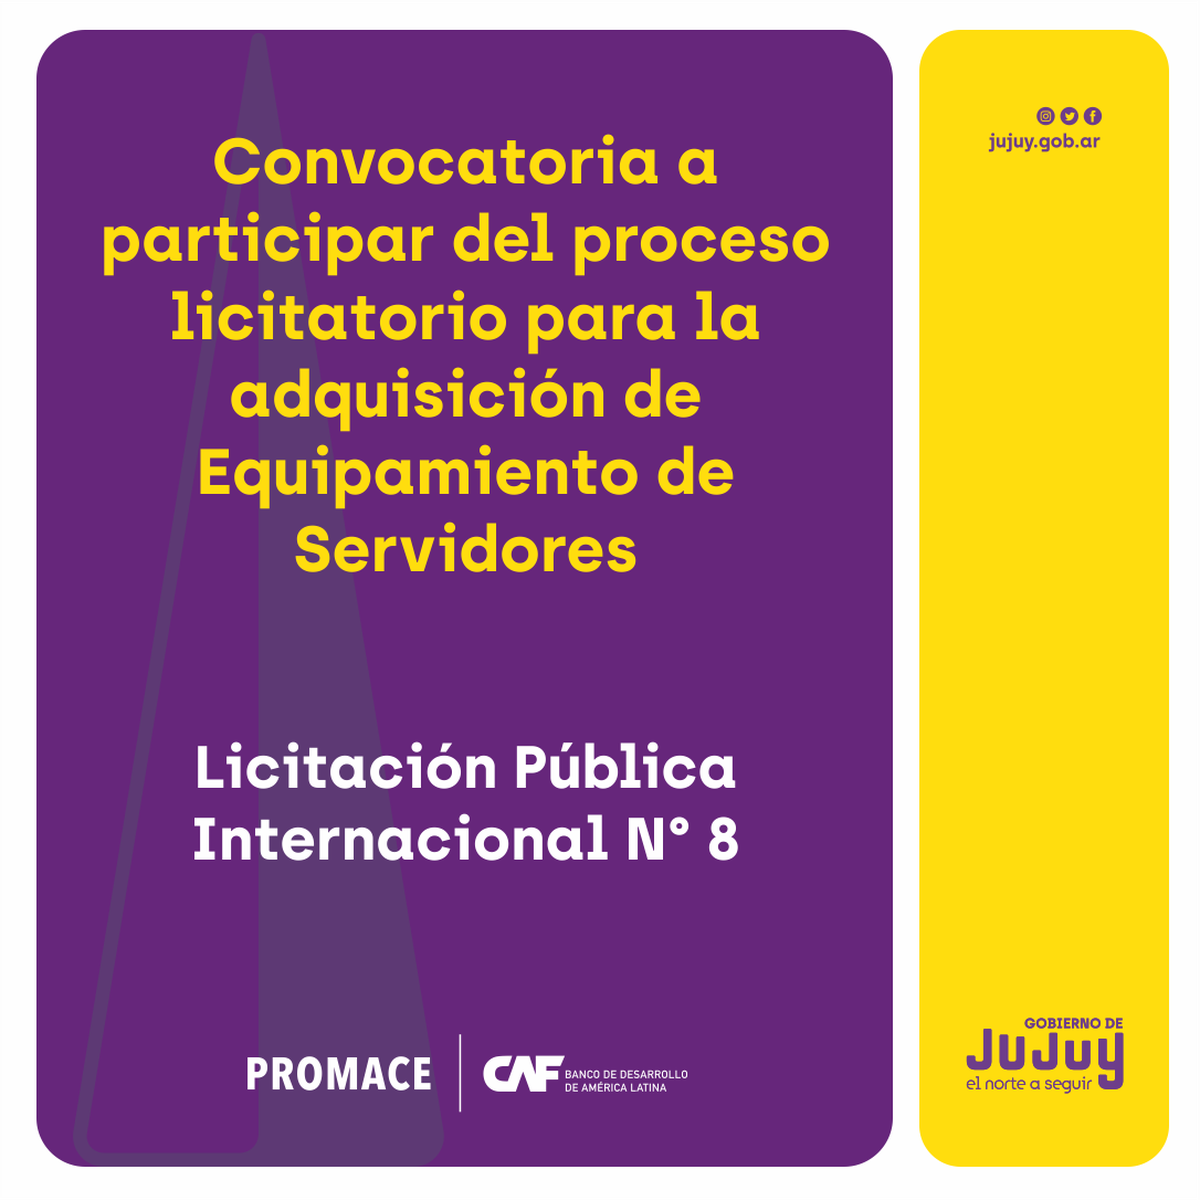 Convocatoria a participar del proceso licitatorio para la adquisición de Equipamiento de Servidores